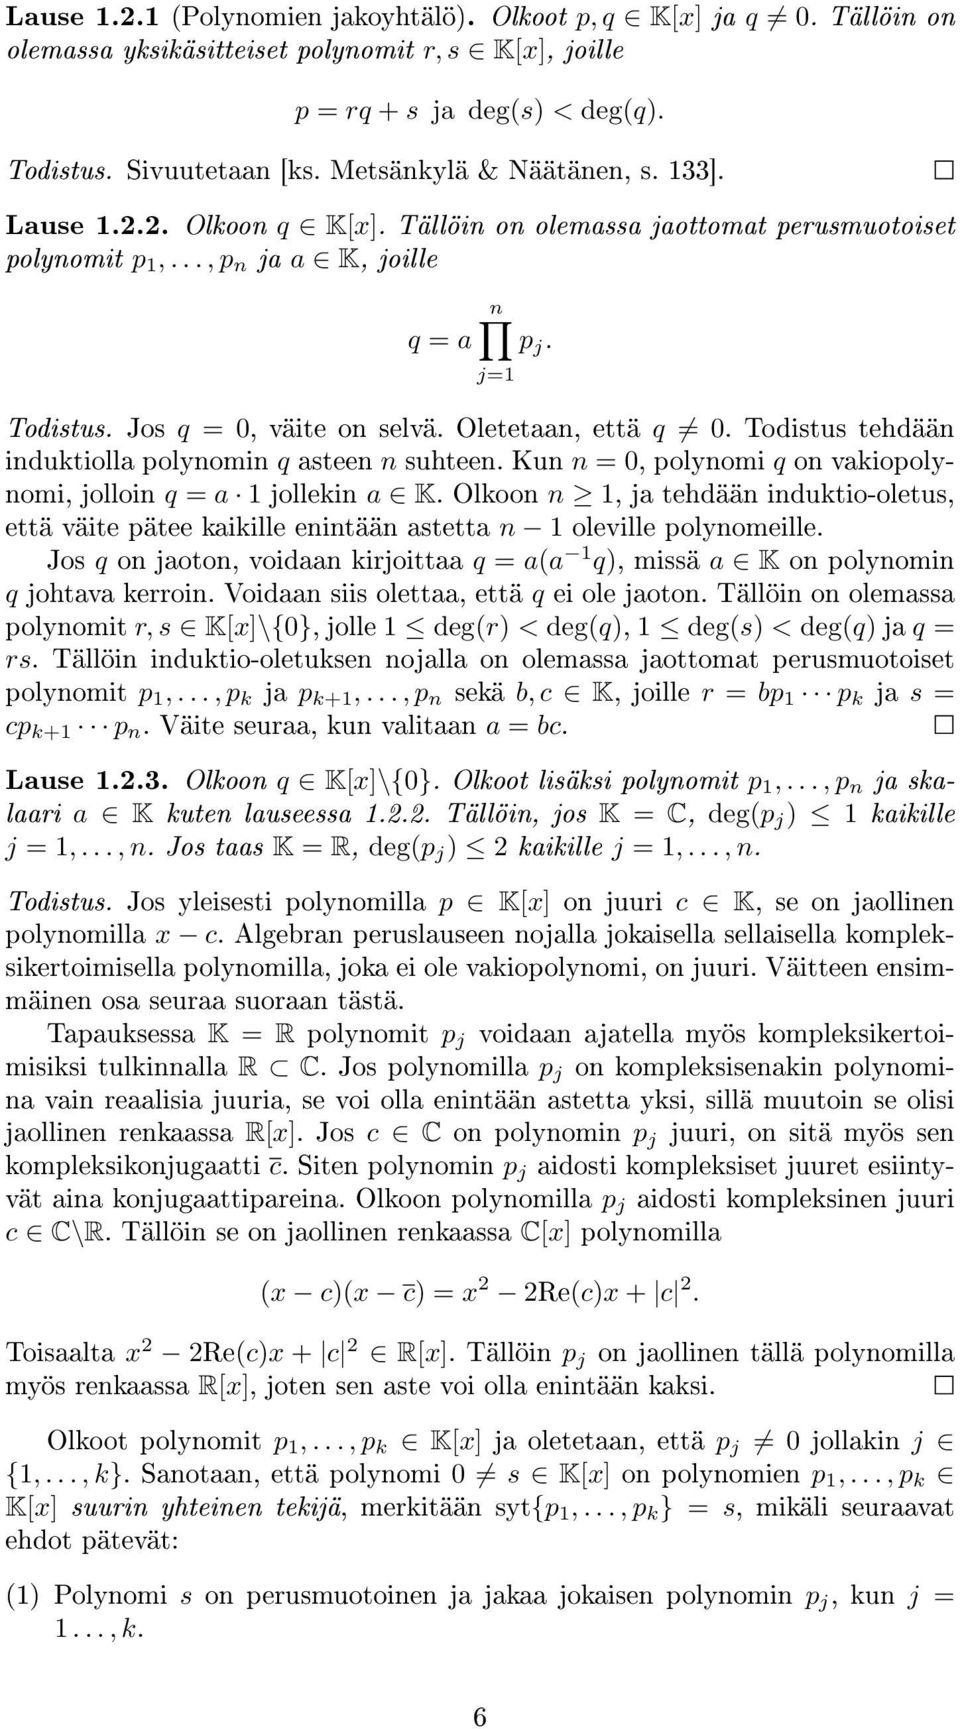 induktiolla polynomin q asteen n suhteen Kun n = 0, polynomi q on vakiopolynomi, jolloin q = a 1 jollekin a K Olkoon n 1, ja tehdään induktio-oletus, että väite pätee kaikille enintään astetta n 1